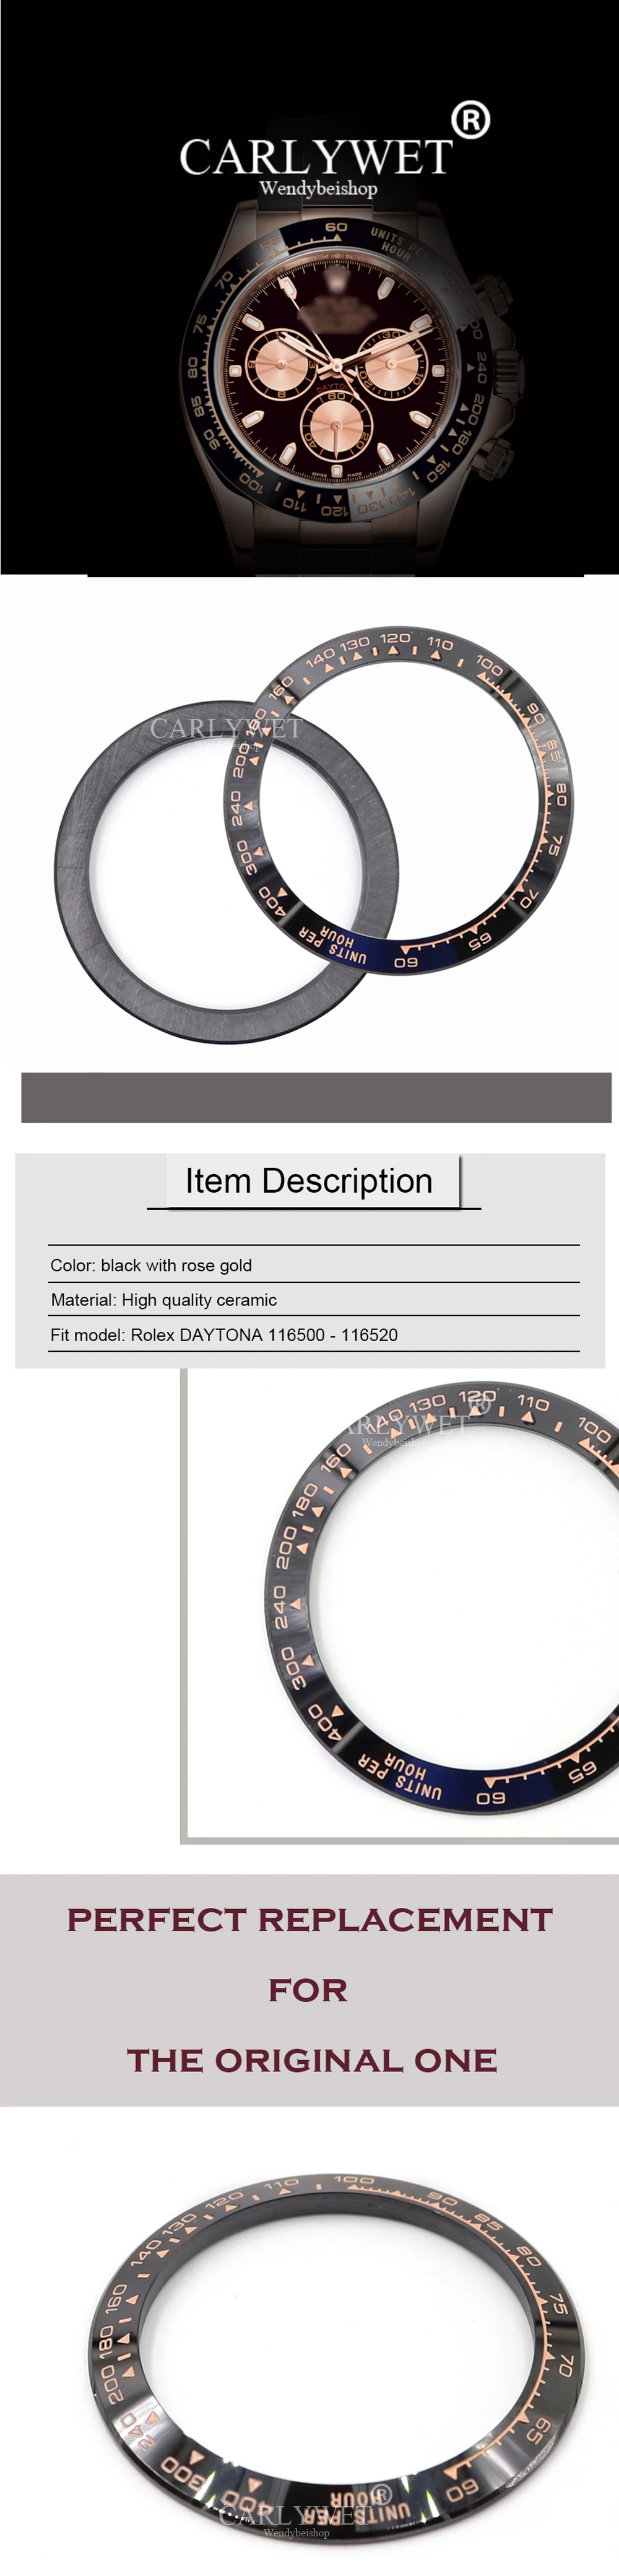 CARLYWET набор инструментов для ремонта DAYTONA высококачественные керамические черные с розовым золотом часы с ободком для 116500-116520